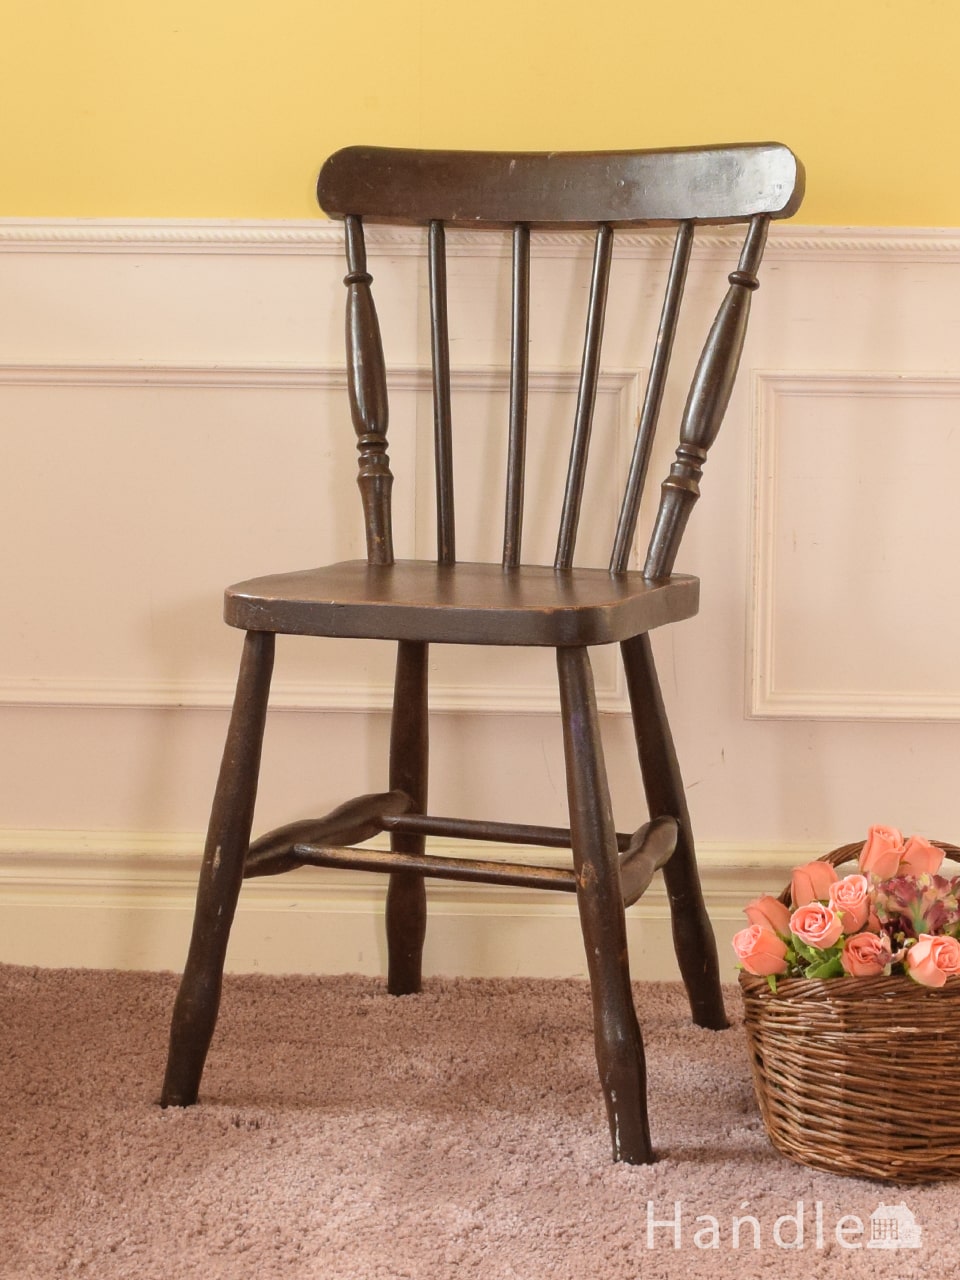 おしゃれなアンティークの椅子、素朴な雰囲気が漂うアンティークの